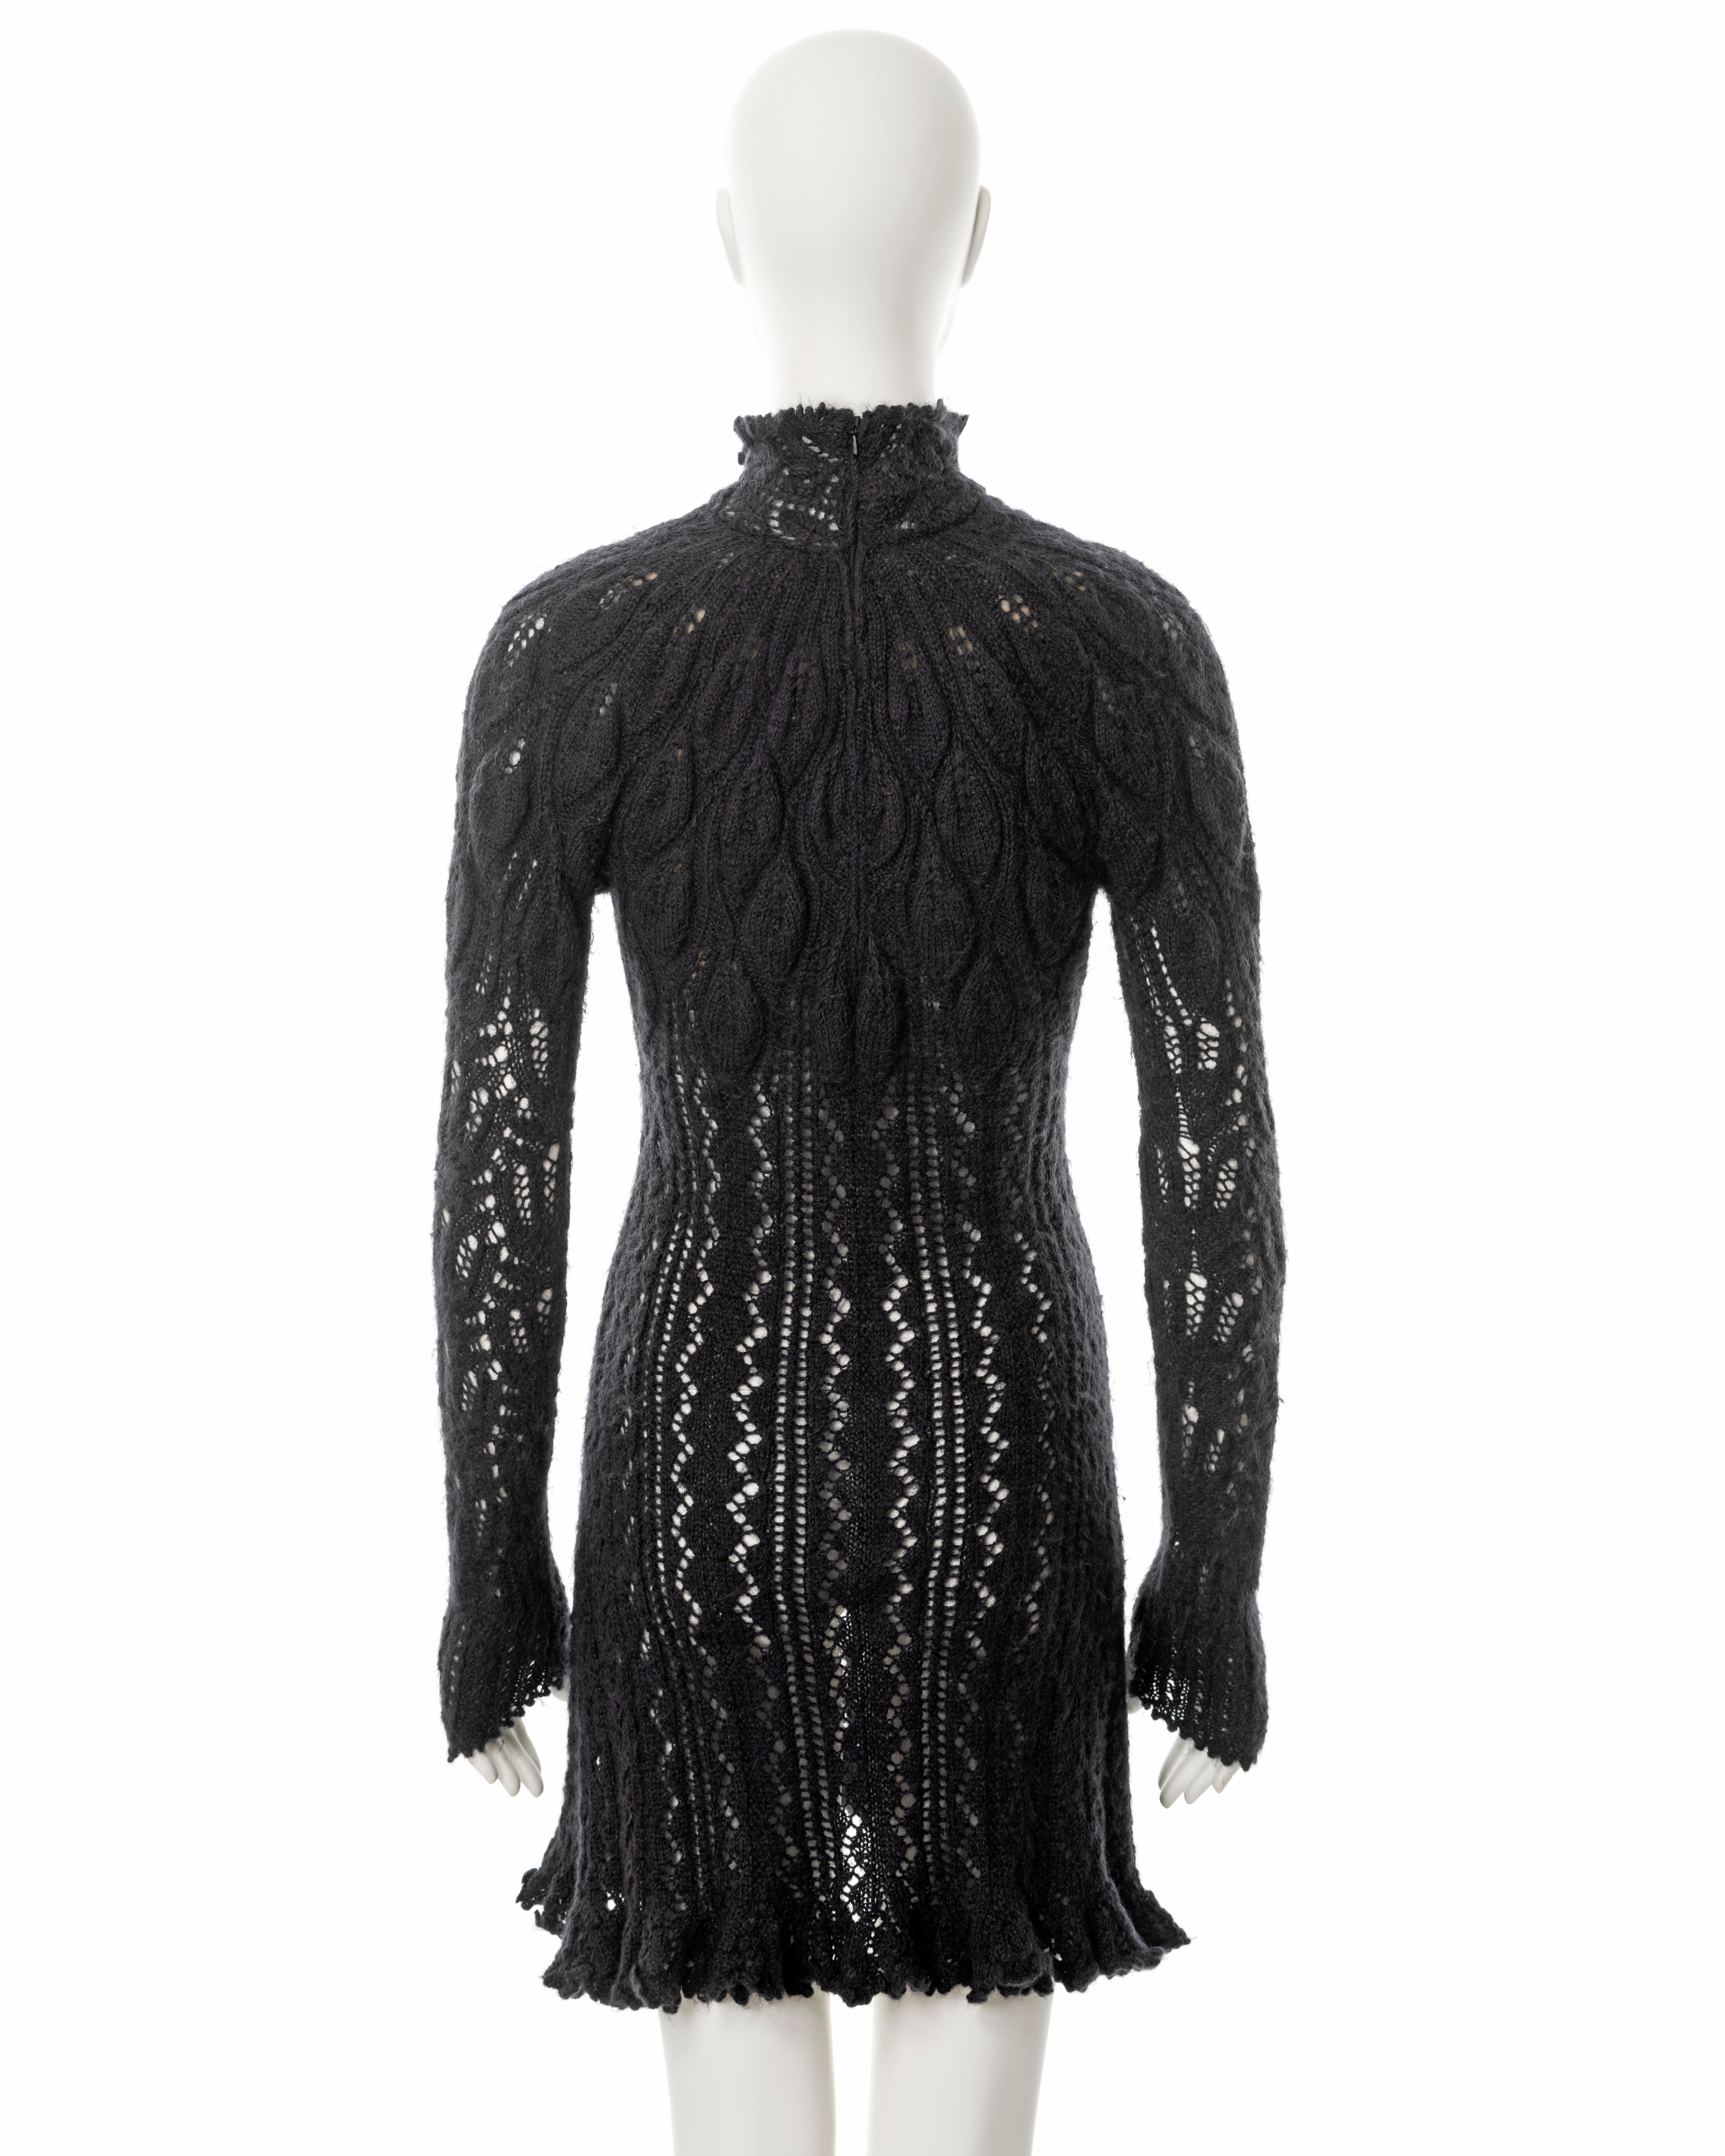 Vivienne Westwood steel-grey open knit alpaca wool corseted mini dress, fw 1993 For Sale 2